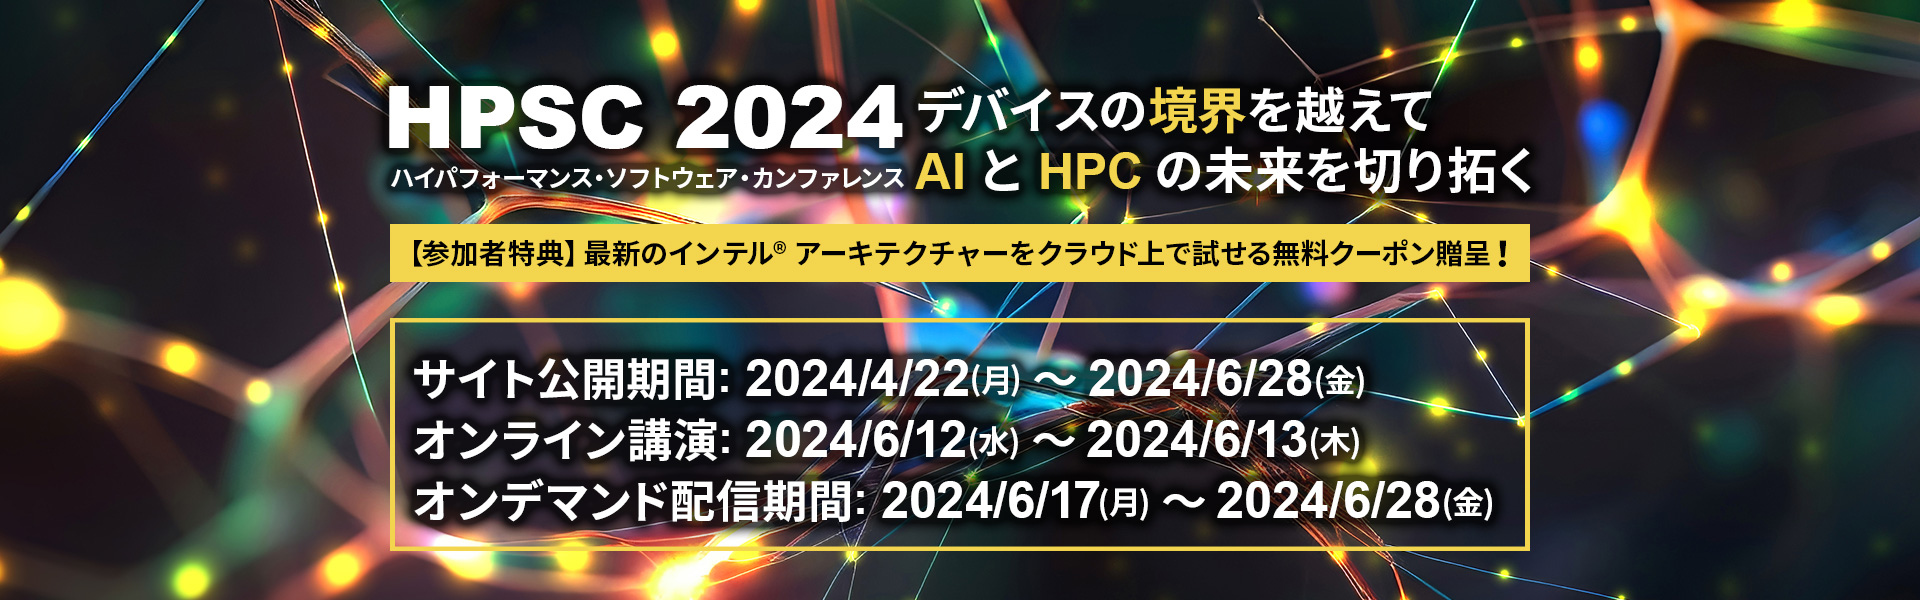 ハイパフォーマンス・ソフトウェア・カンファレンス (HPSC) 2024 期間限定イベントサイト公開、オンライン講演への参加申込受付中